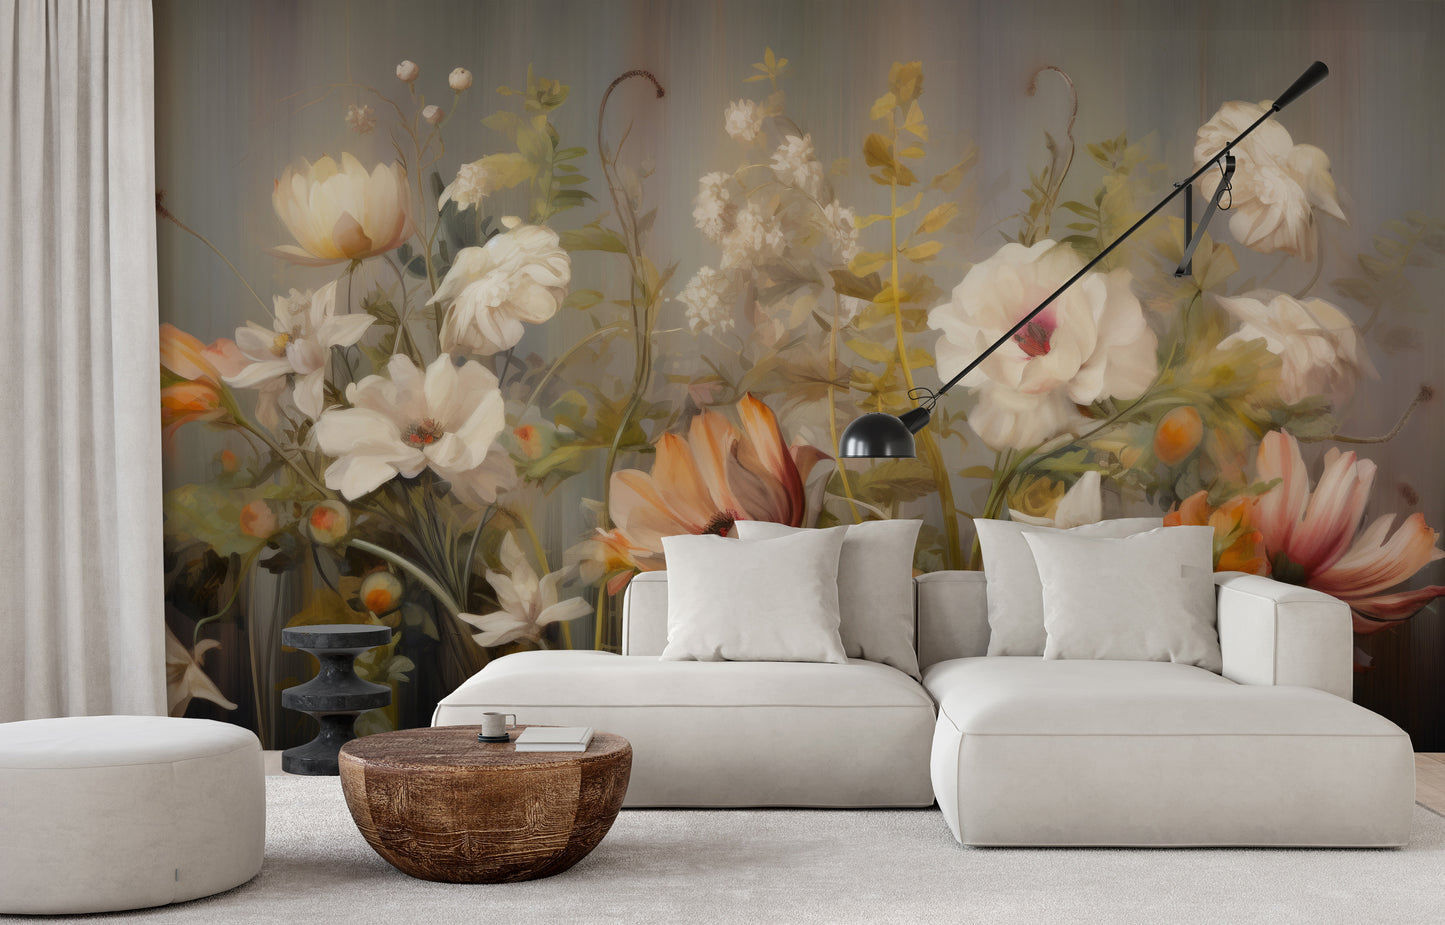 Fototapeta o nazwie Misty Floral Canvas użyta w aranzacji wnętrza.